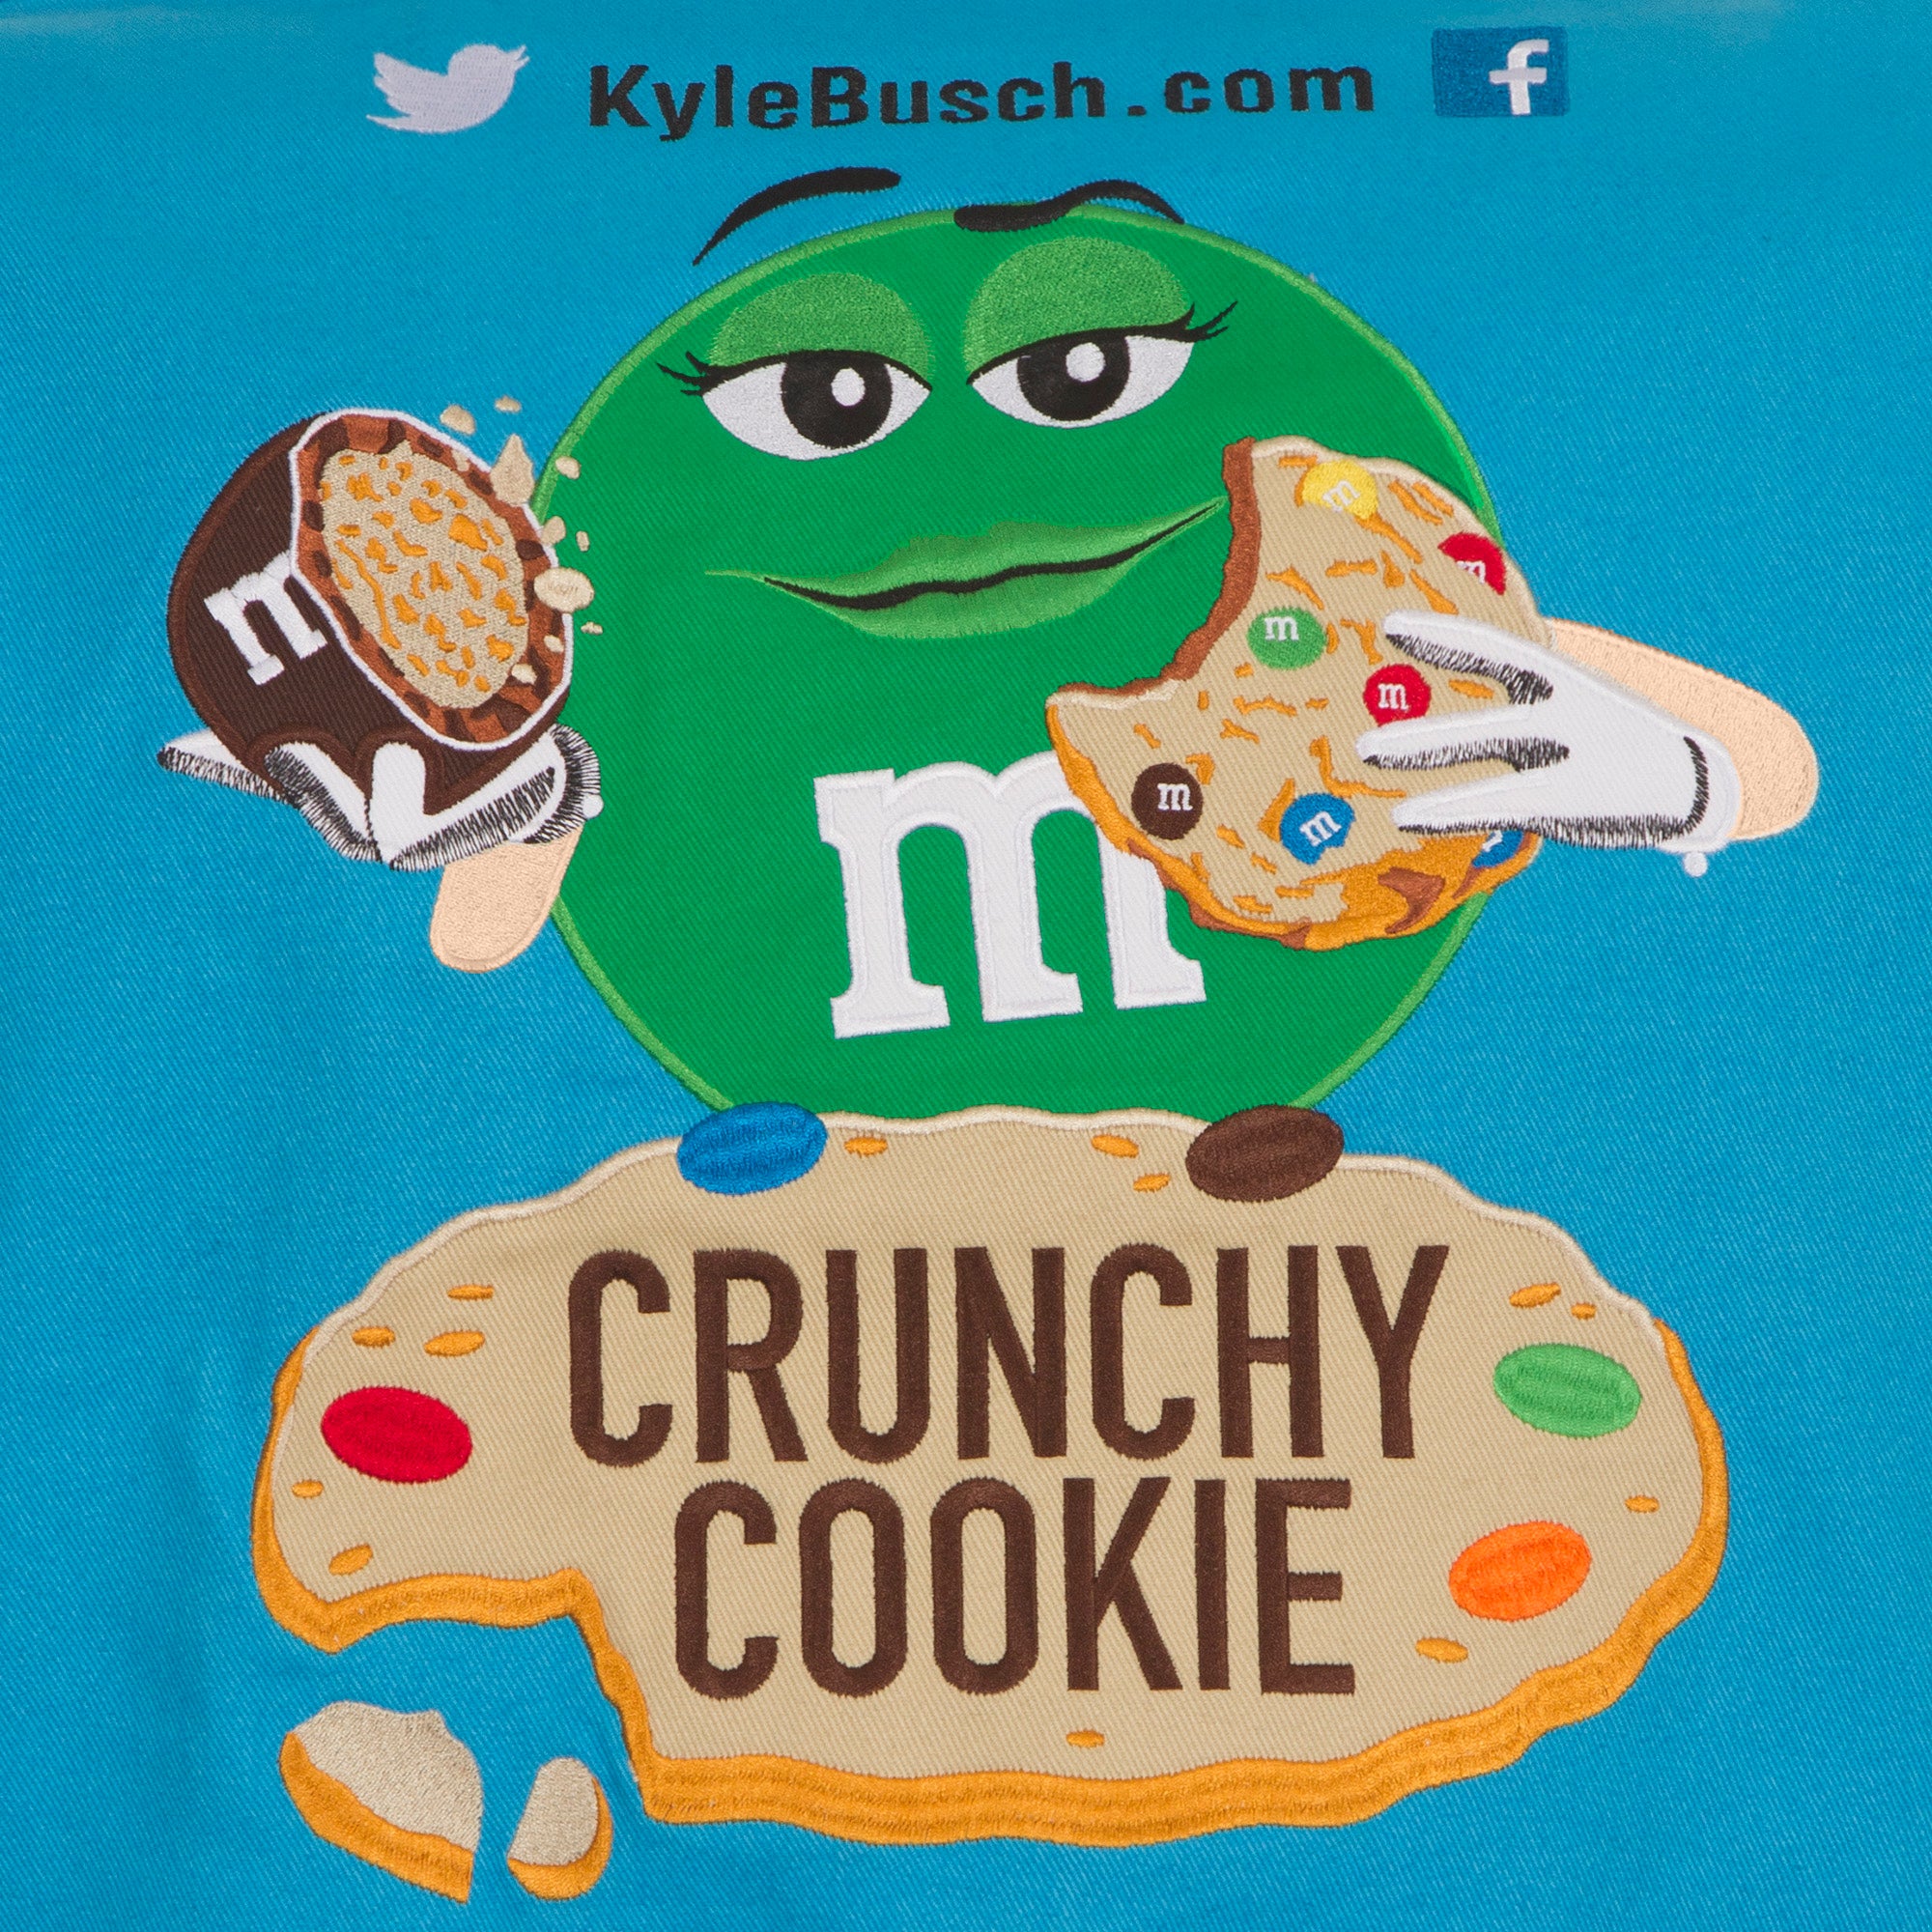 Kyle Busch running M&M's Crunchy Cookie scheme at Richmond